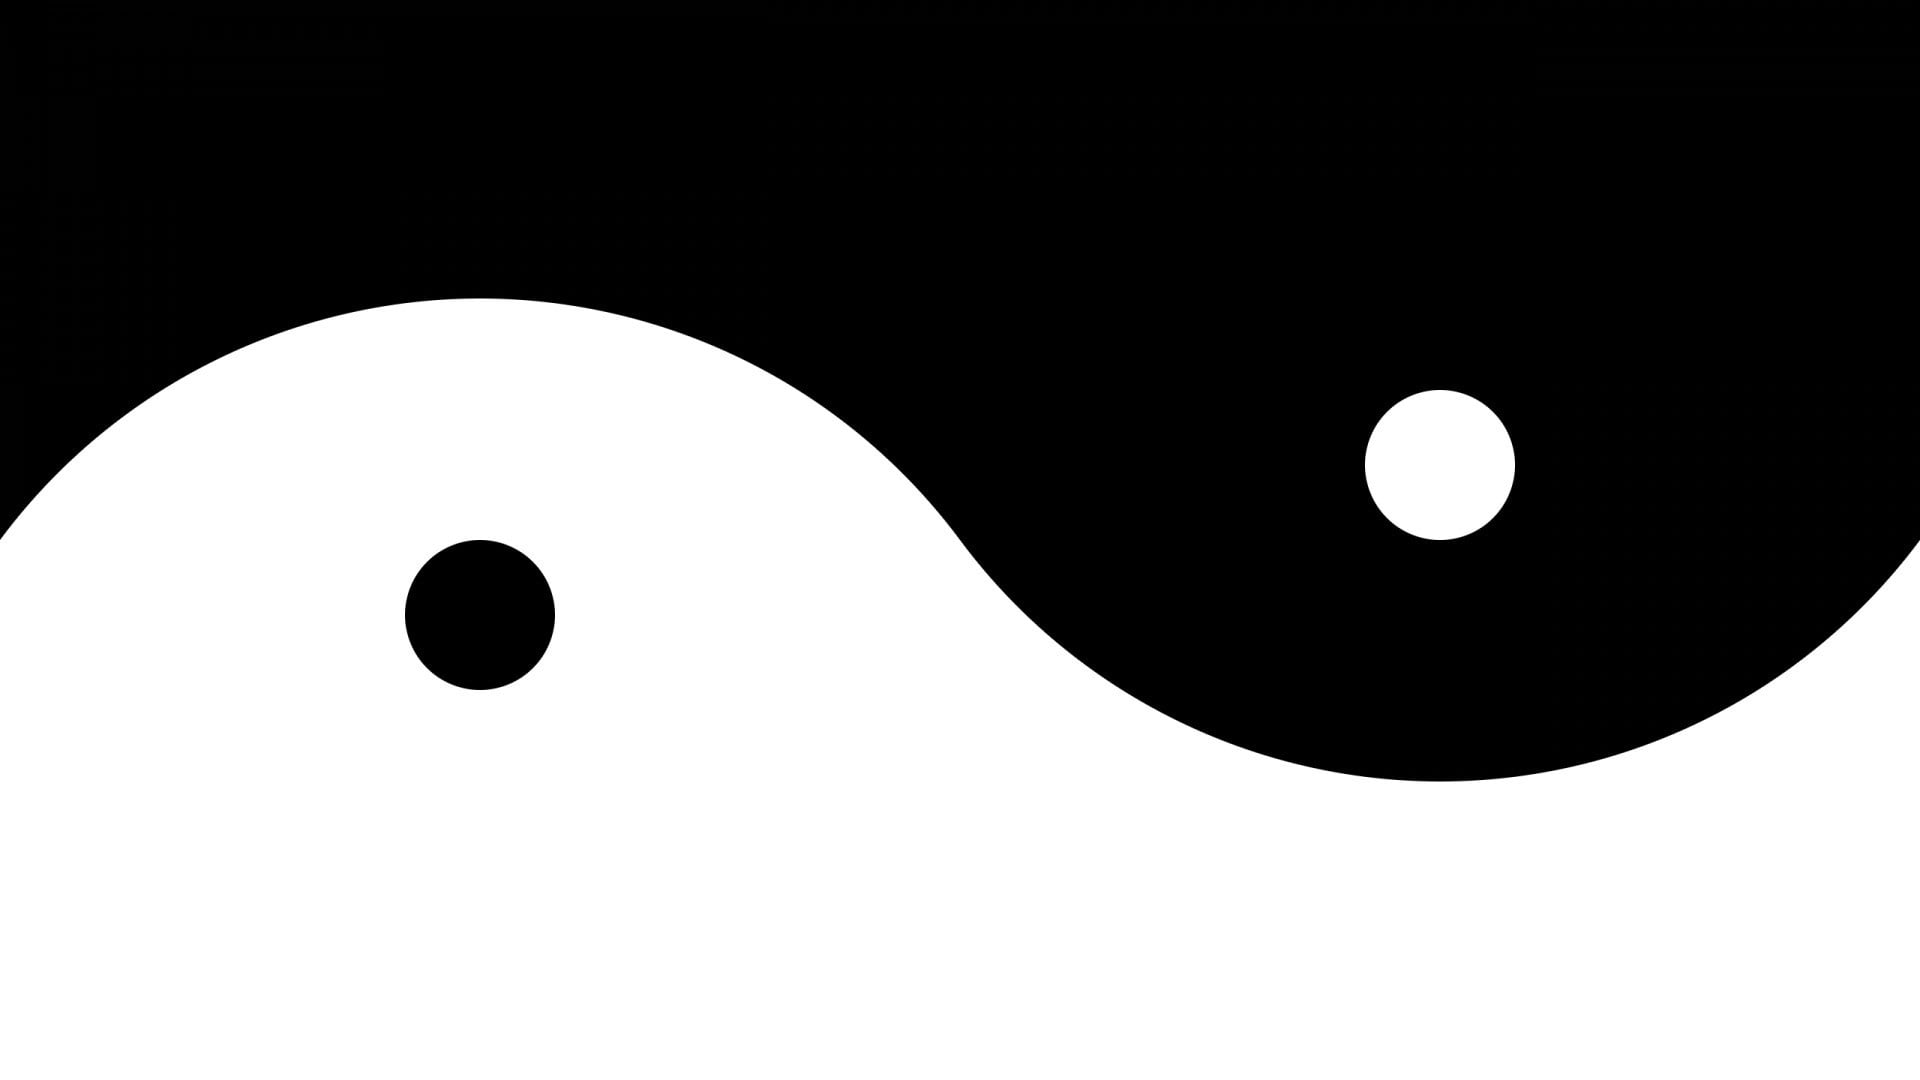 Yin-Yang logo, Yin and Yang